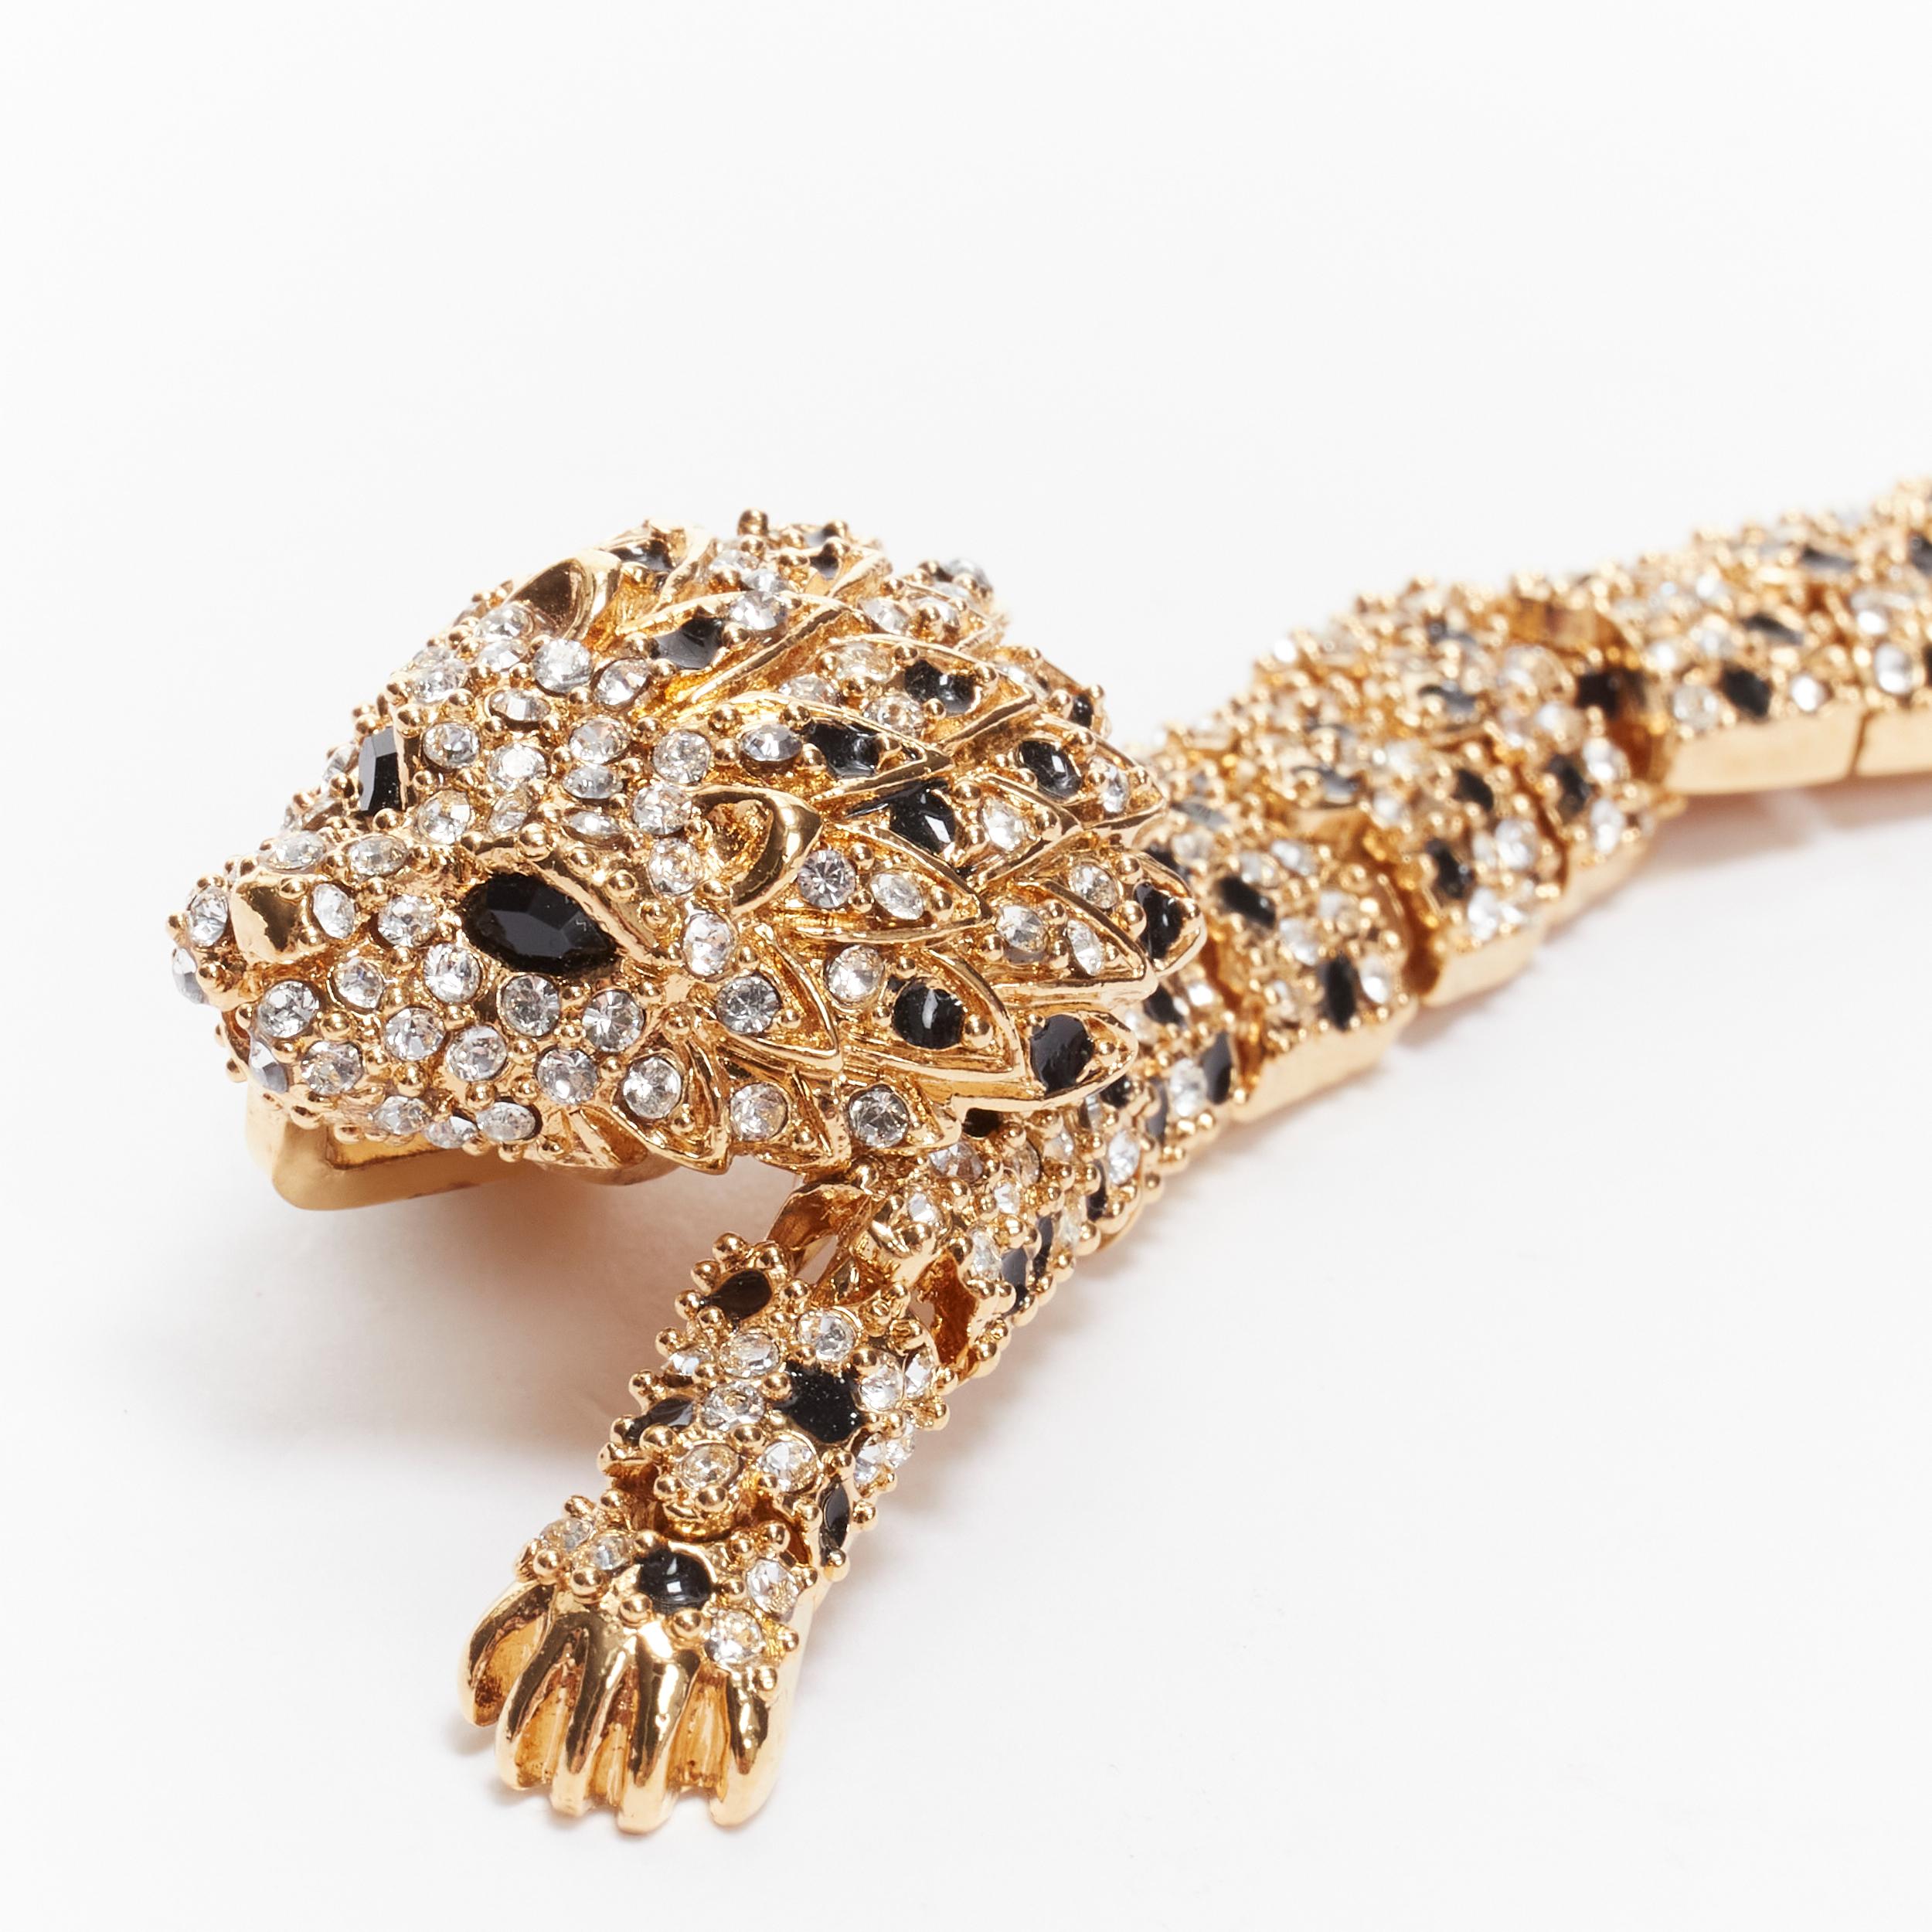 rare SAINT LAURENT Hedi Slimane crystal encrusted gold lion  cocktail bracelet 3